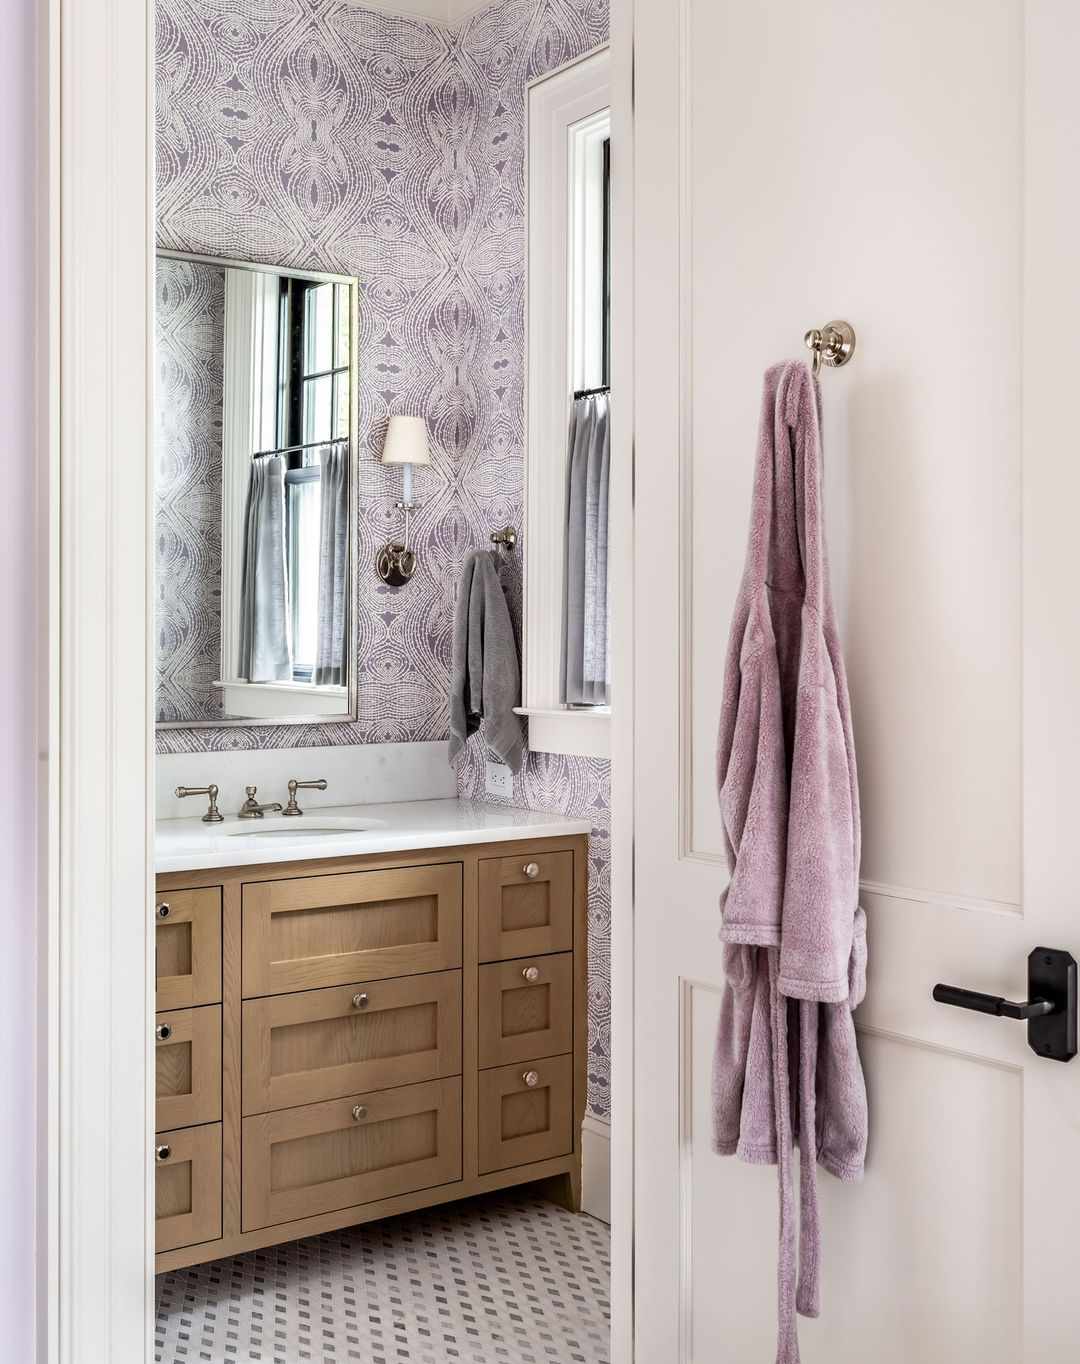 Salle de bain sereine et apaisante avec un papier peint orné violet et blanc.